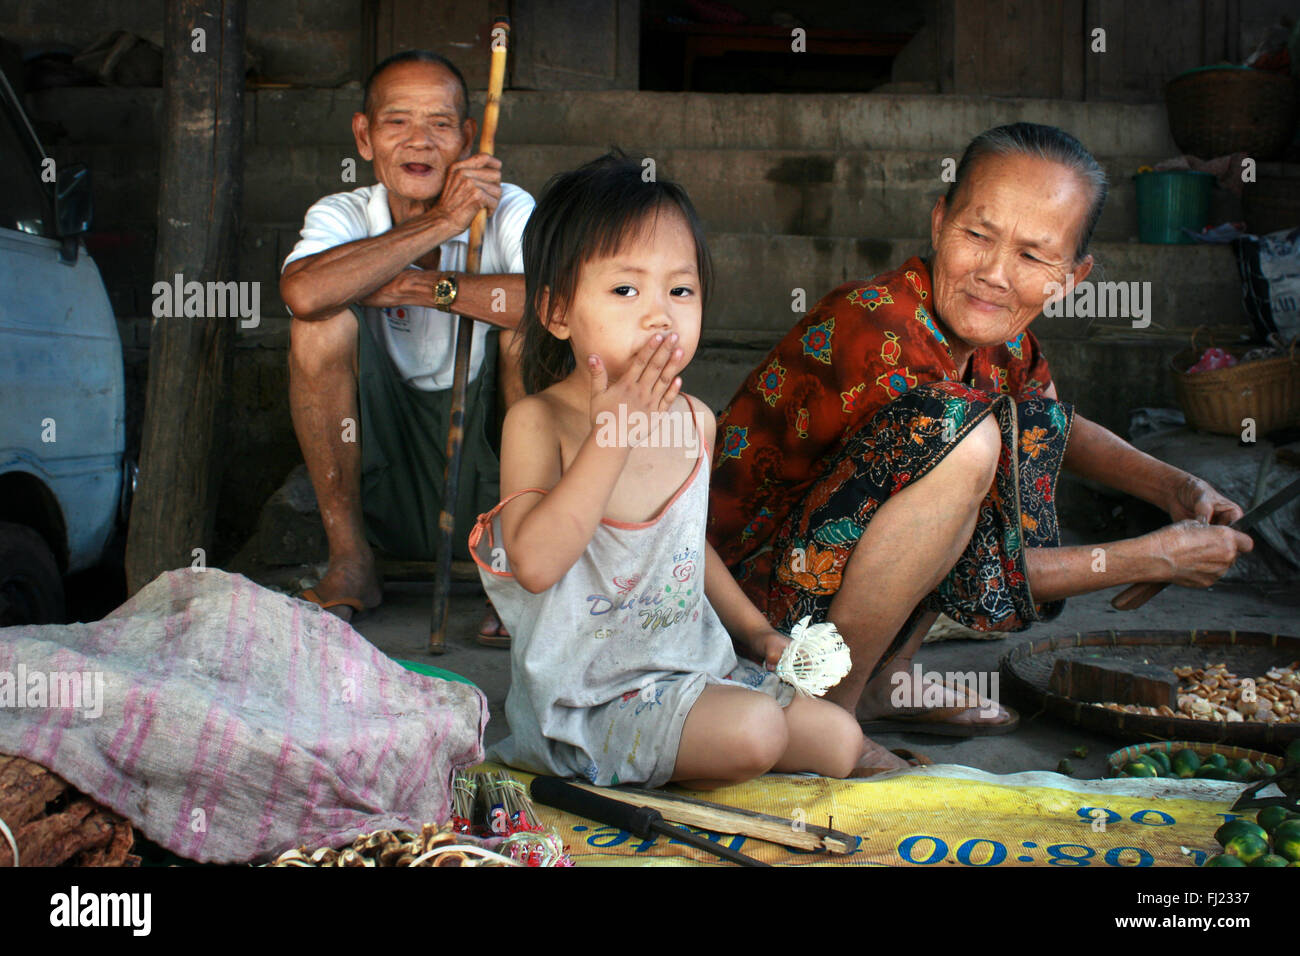 Magnifique portrait de famille laotienne , Laos Banque D'Images